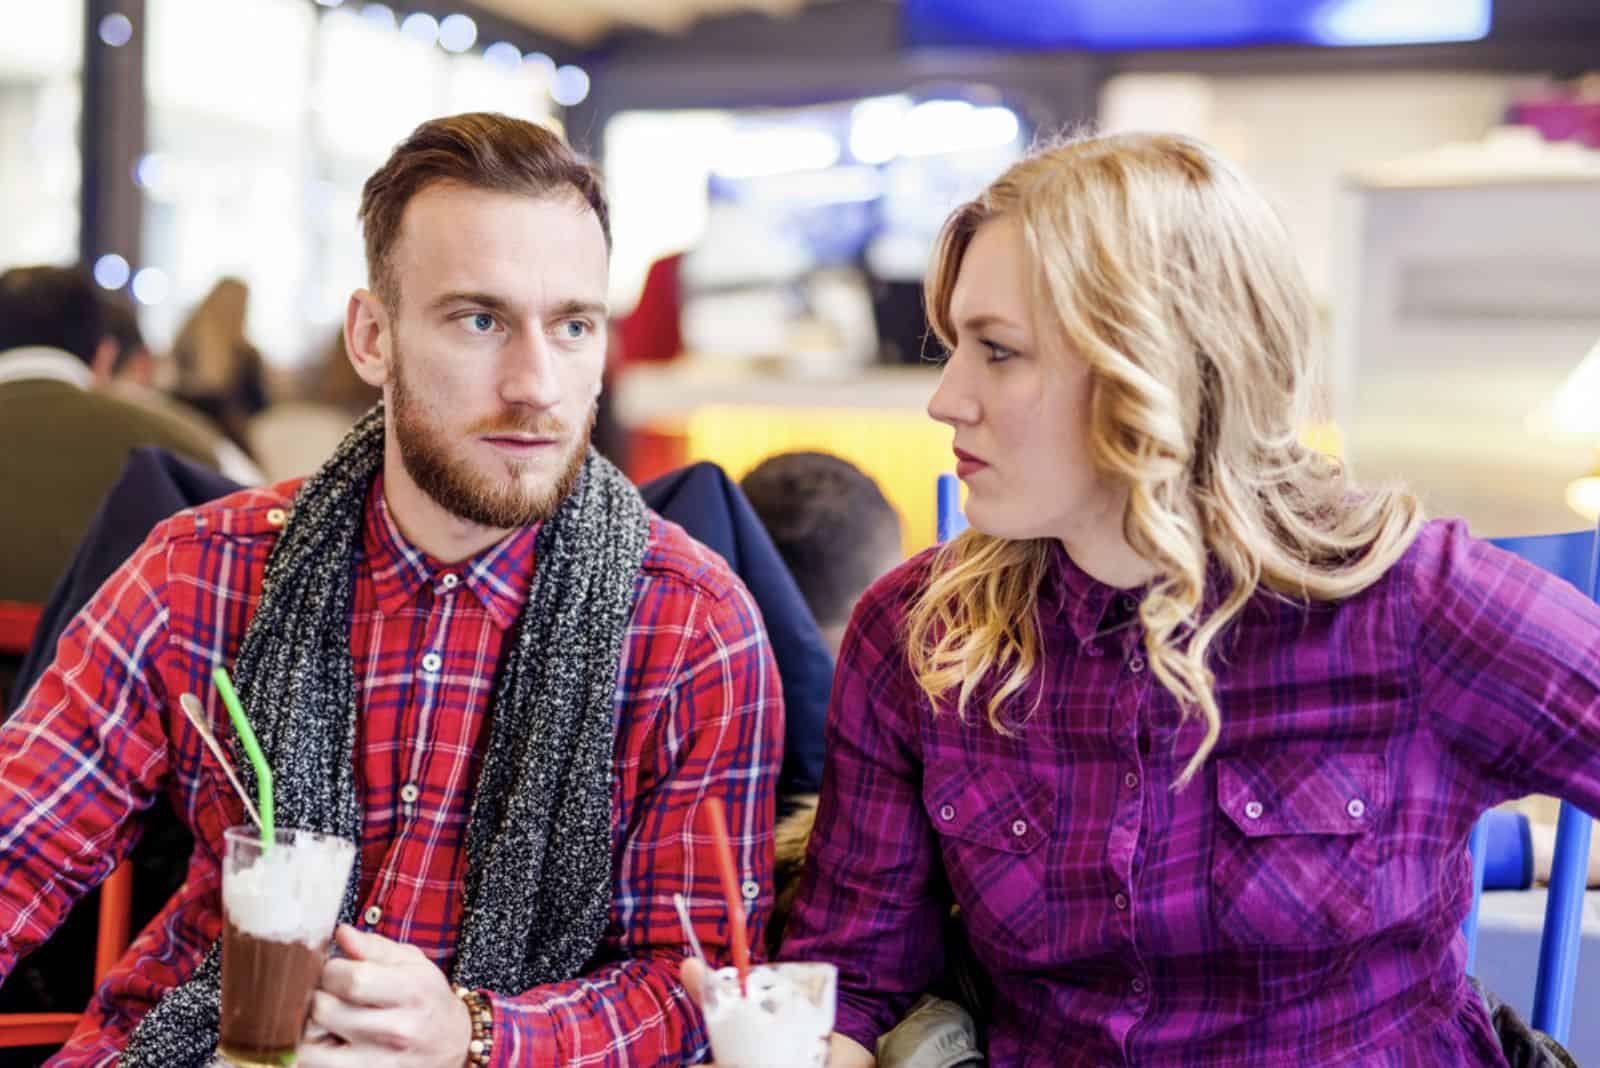 Eine Frau mit blonden Haaren sitzt neben einem Mann und sie unterhalten sich